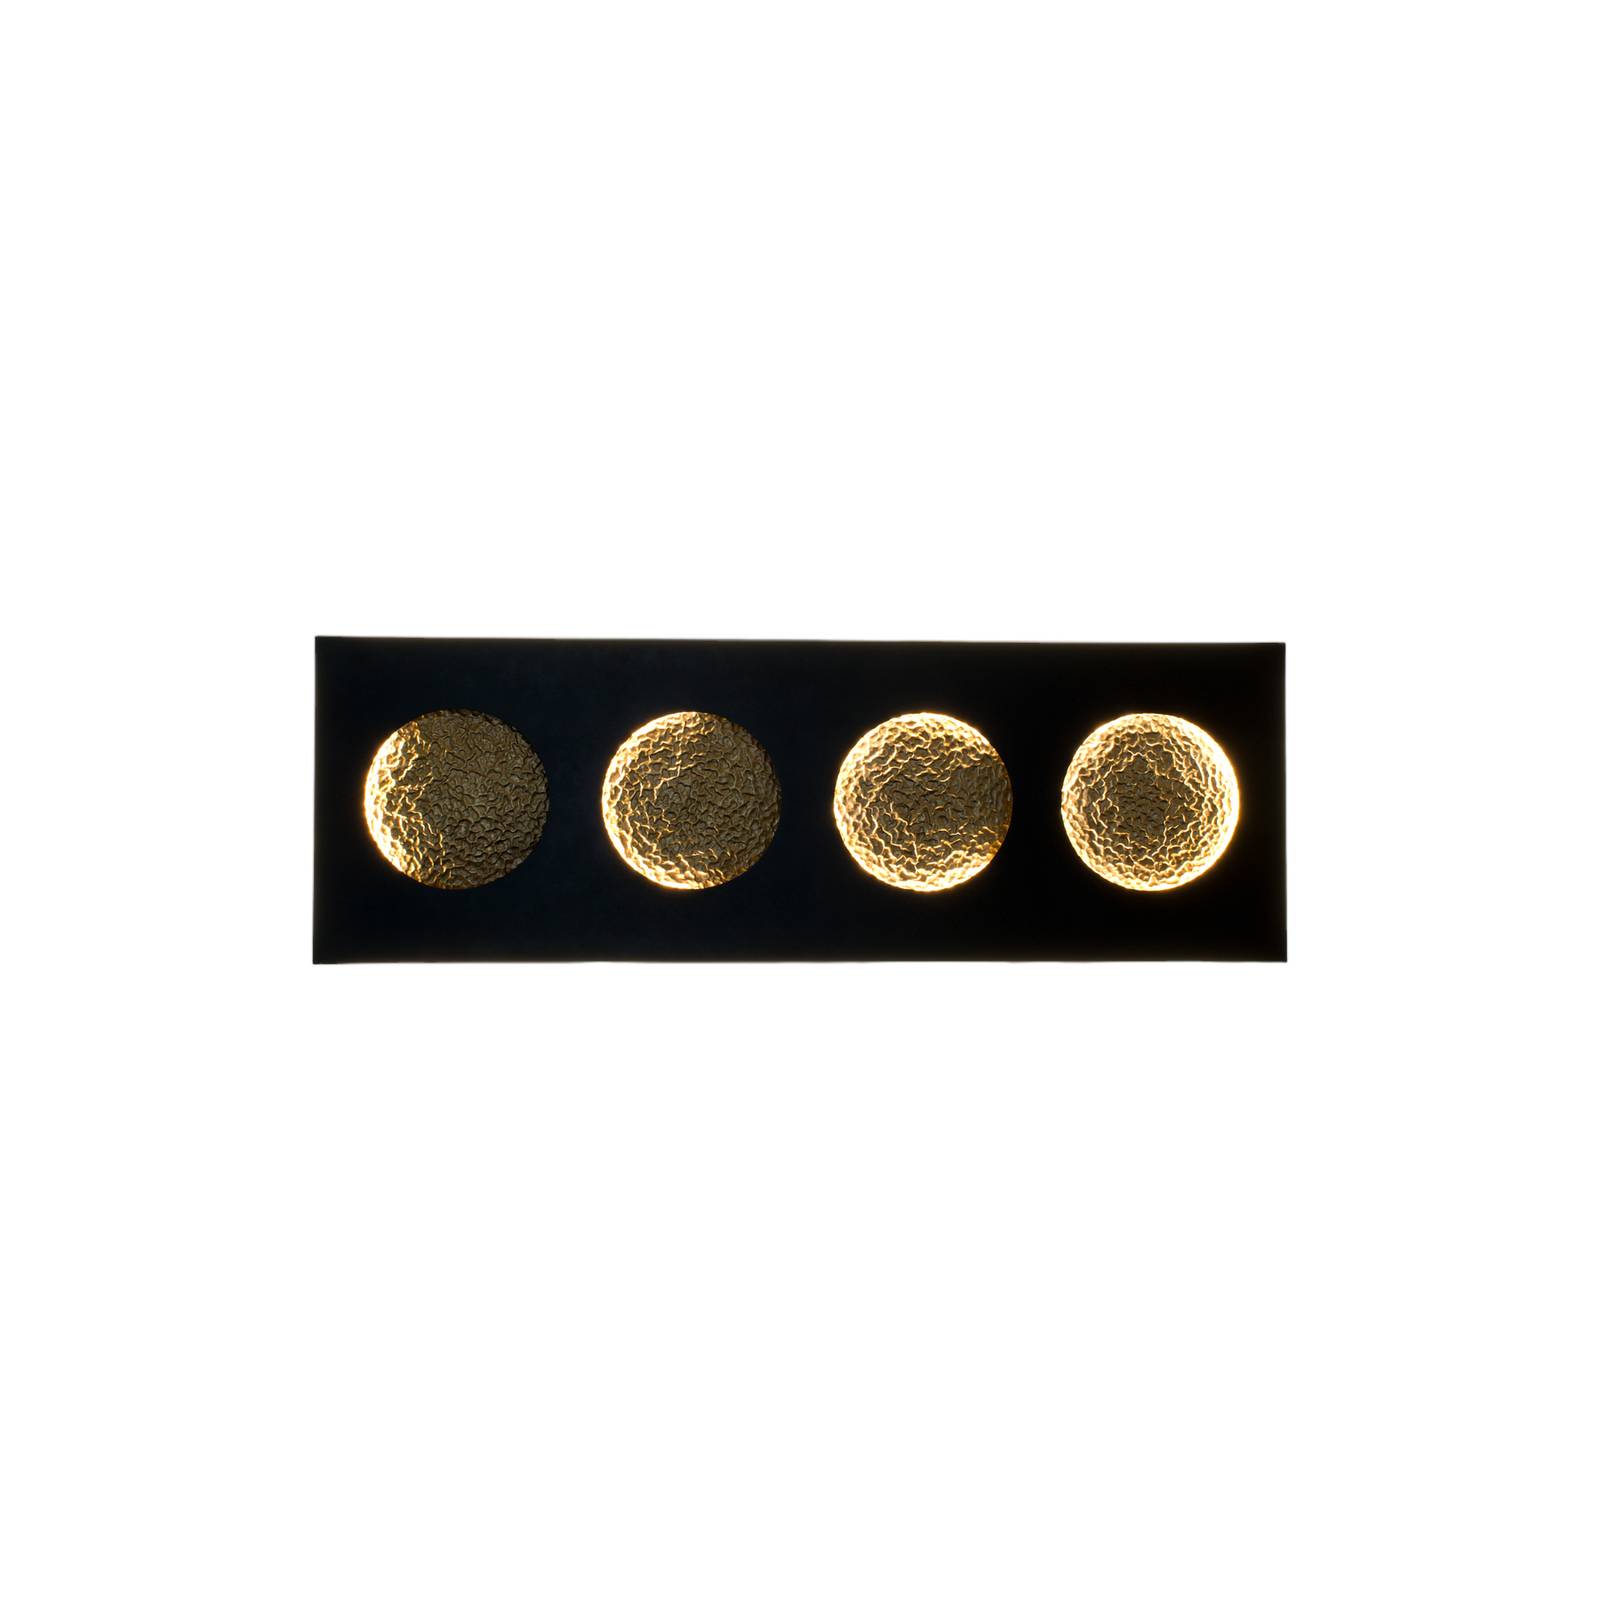 Holländer LED-Wandleuchte Fasi Della Luna, schwarz/gold